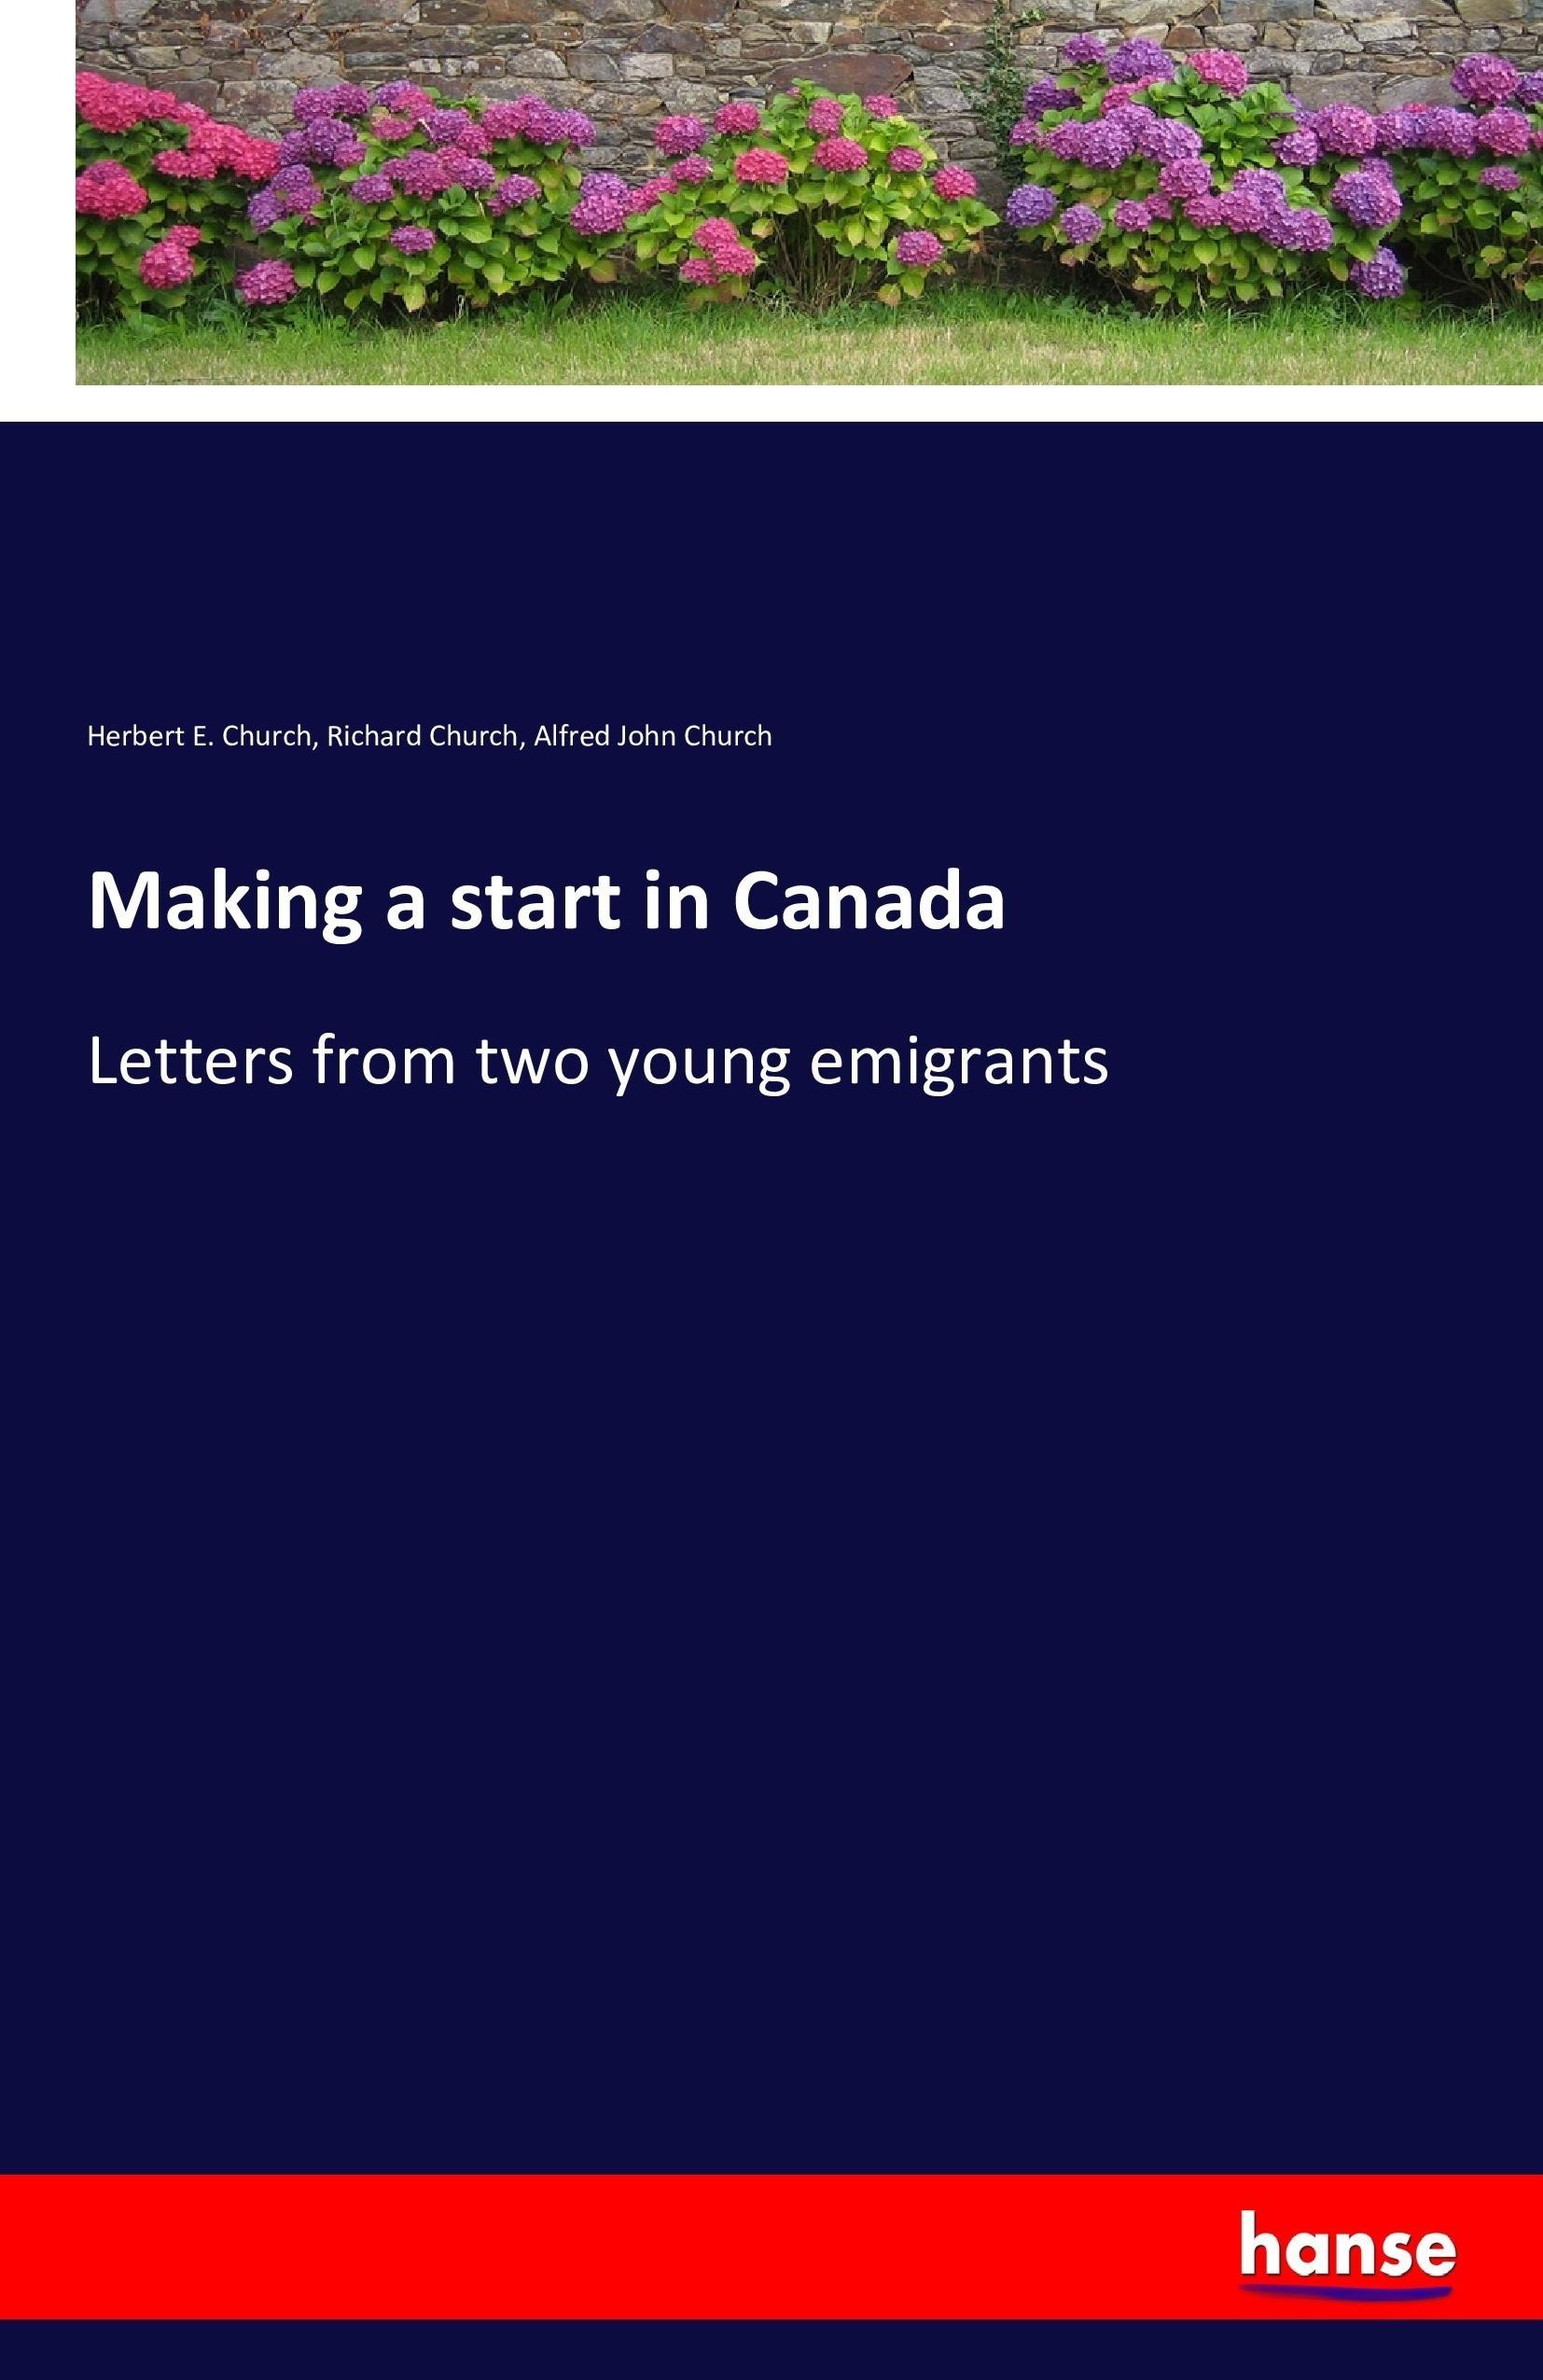 Making a start in Canada - Church, Herbert E. Church, Richard Church, Alfred John